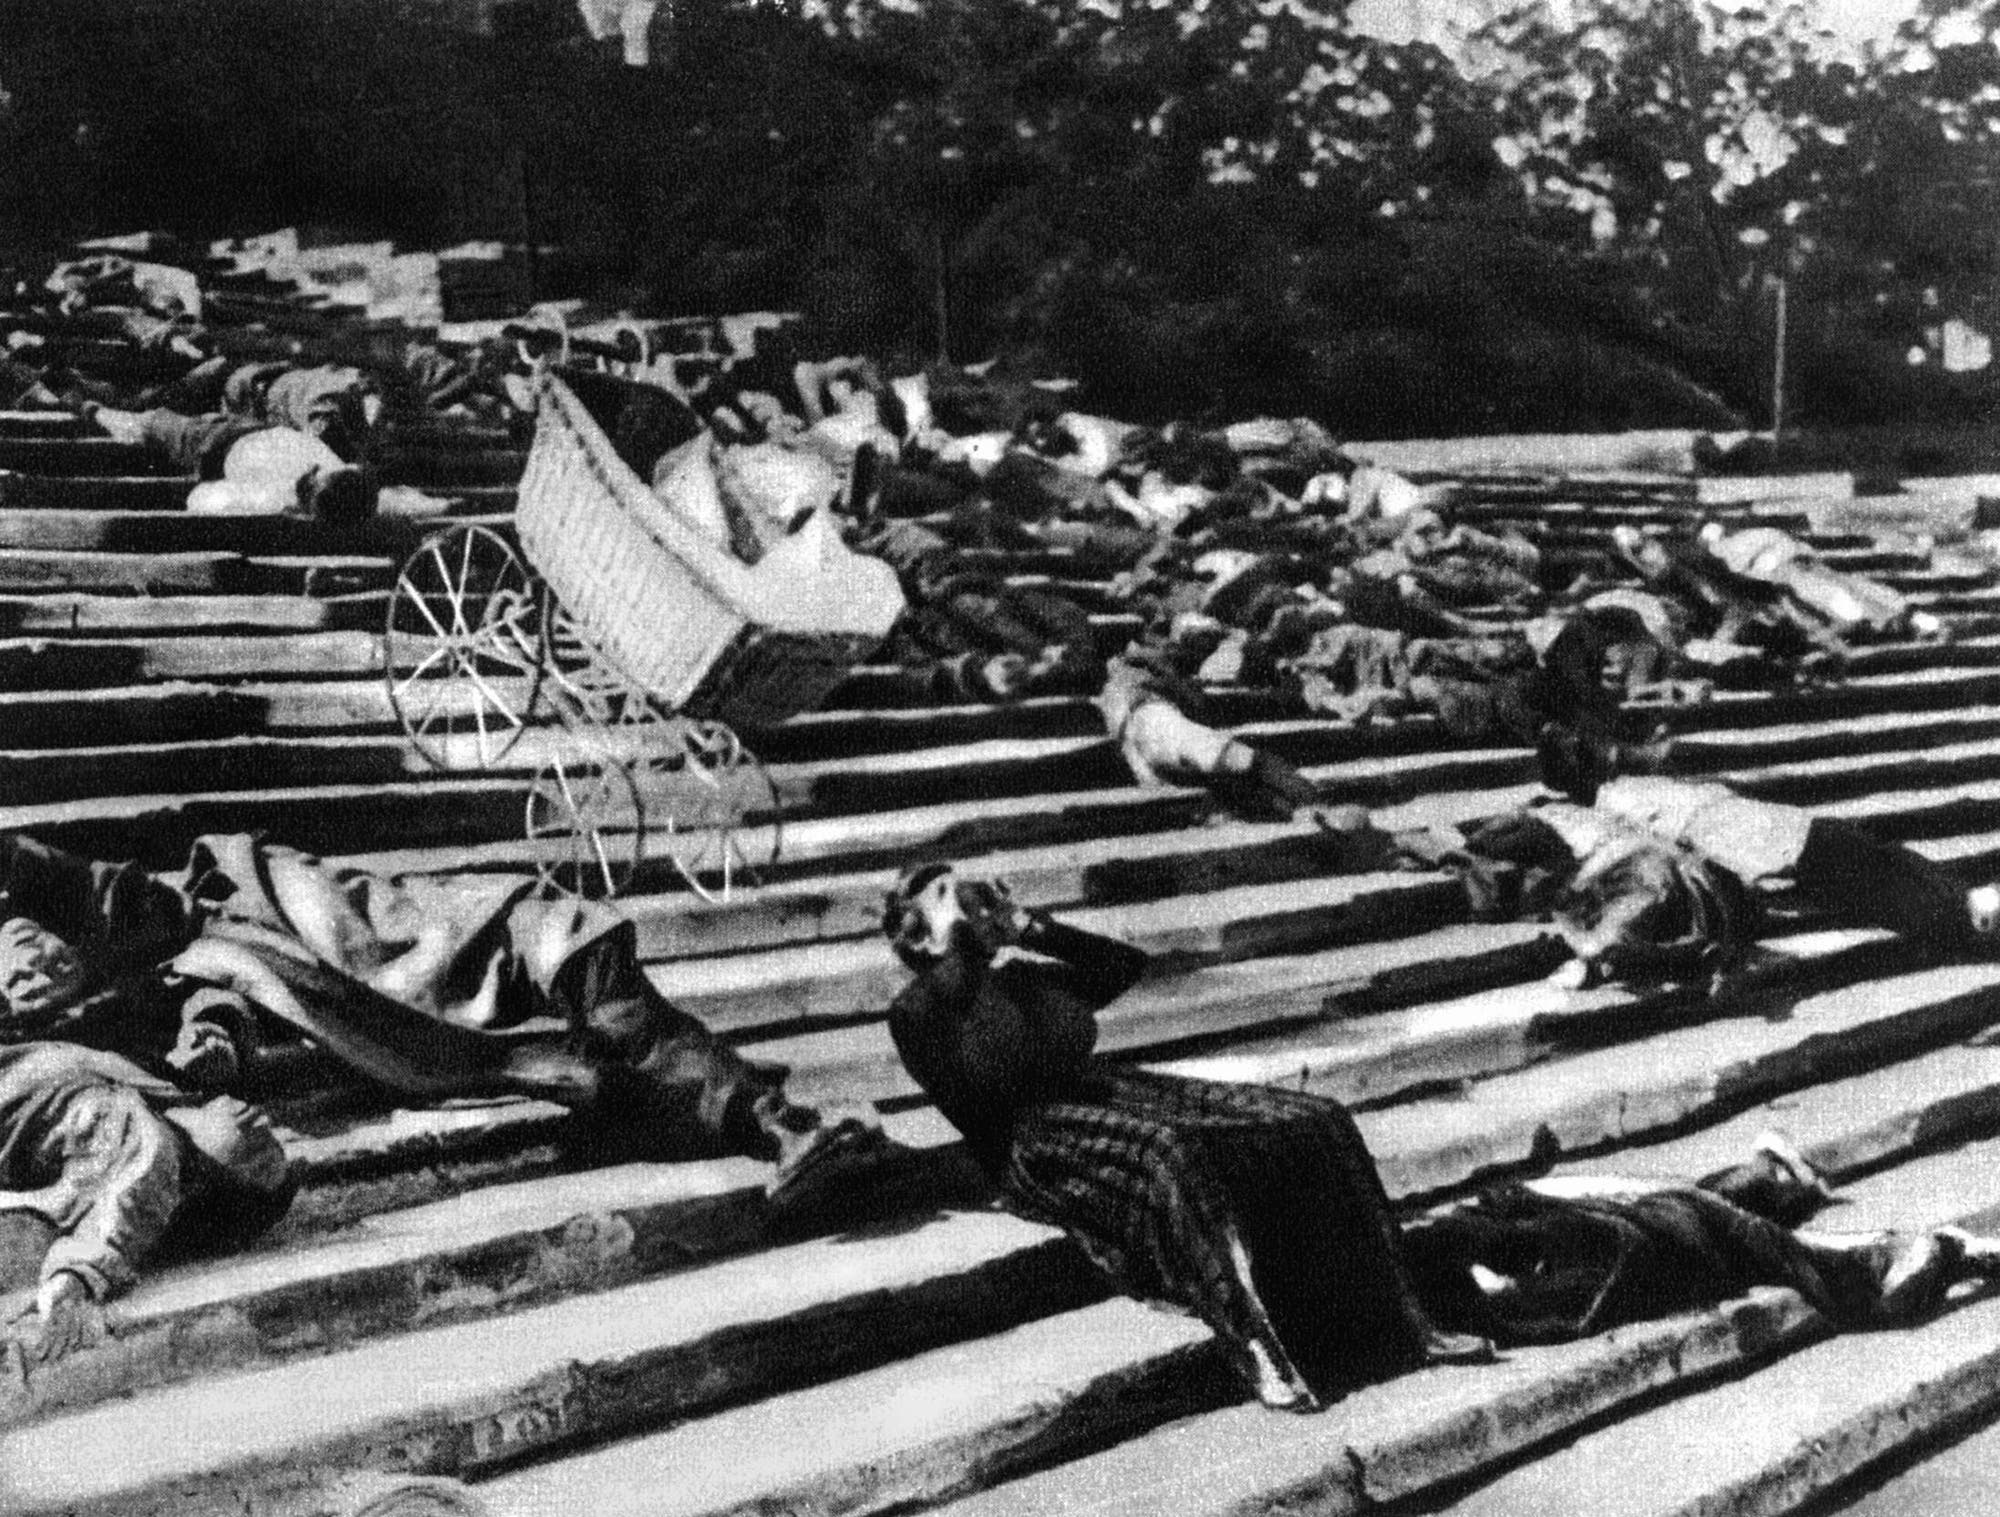 Schwarz-Weiß-Szene aus dem Stummfilm »Panzerkreuzer Potemkin« (UDSSR 1925, Regie: Sergej Eisenstein). Ein Kinderwagen rollt eine Treppe hinunter, auf der viele Verletze und Tote liegen, um die sich niemand kümmert.